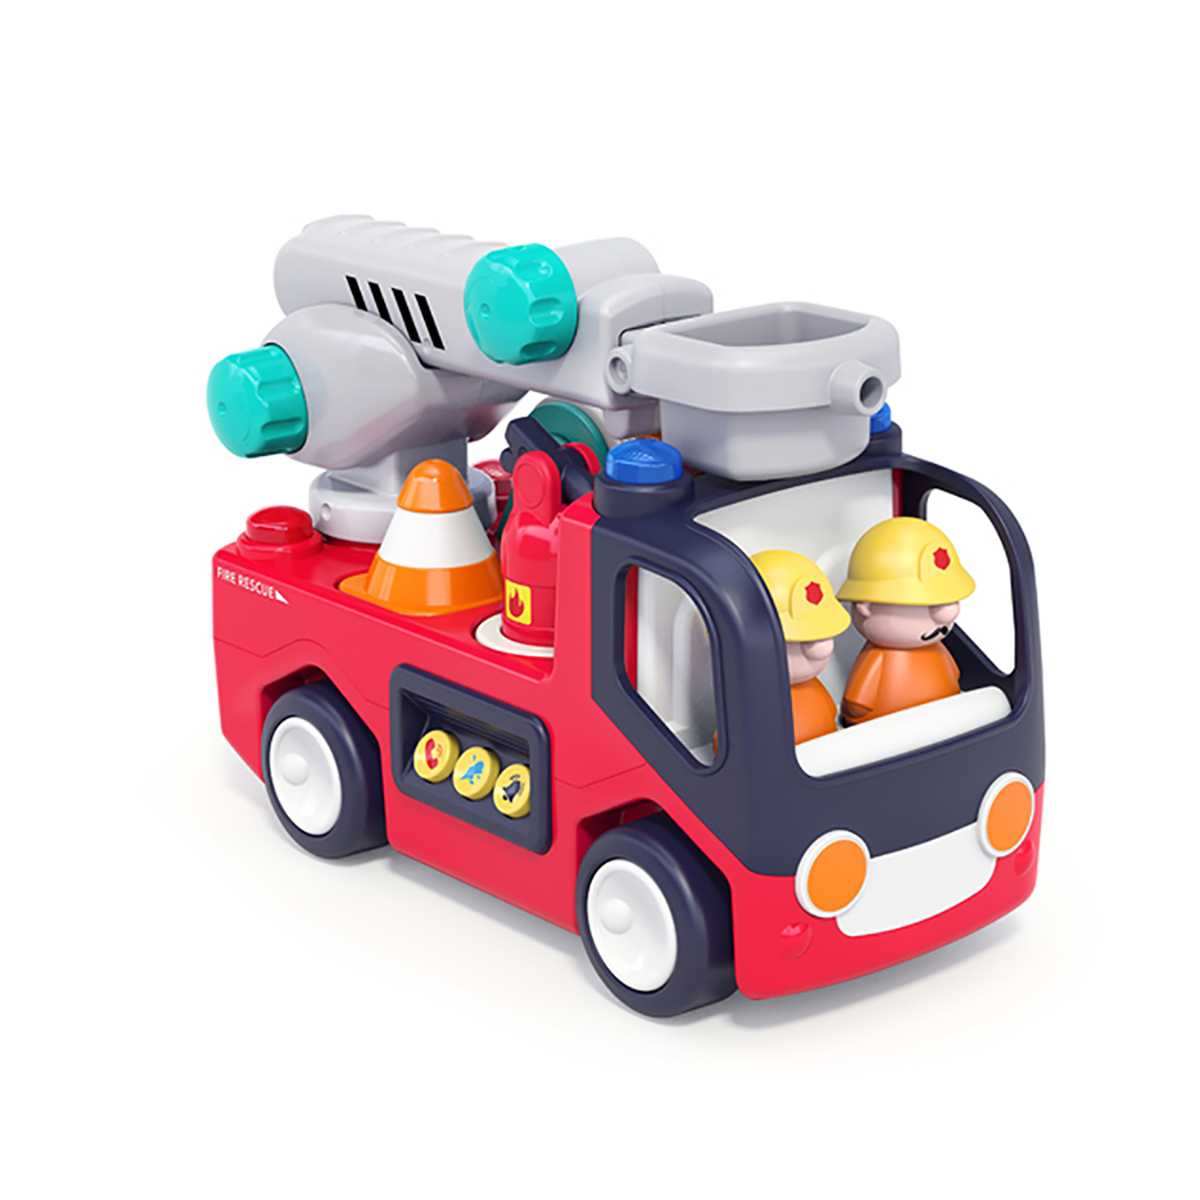 הכבאית הראשונה שלי הולה טויס – Hola Toys Early Learning Fire Engine